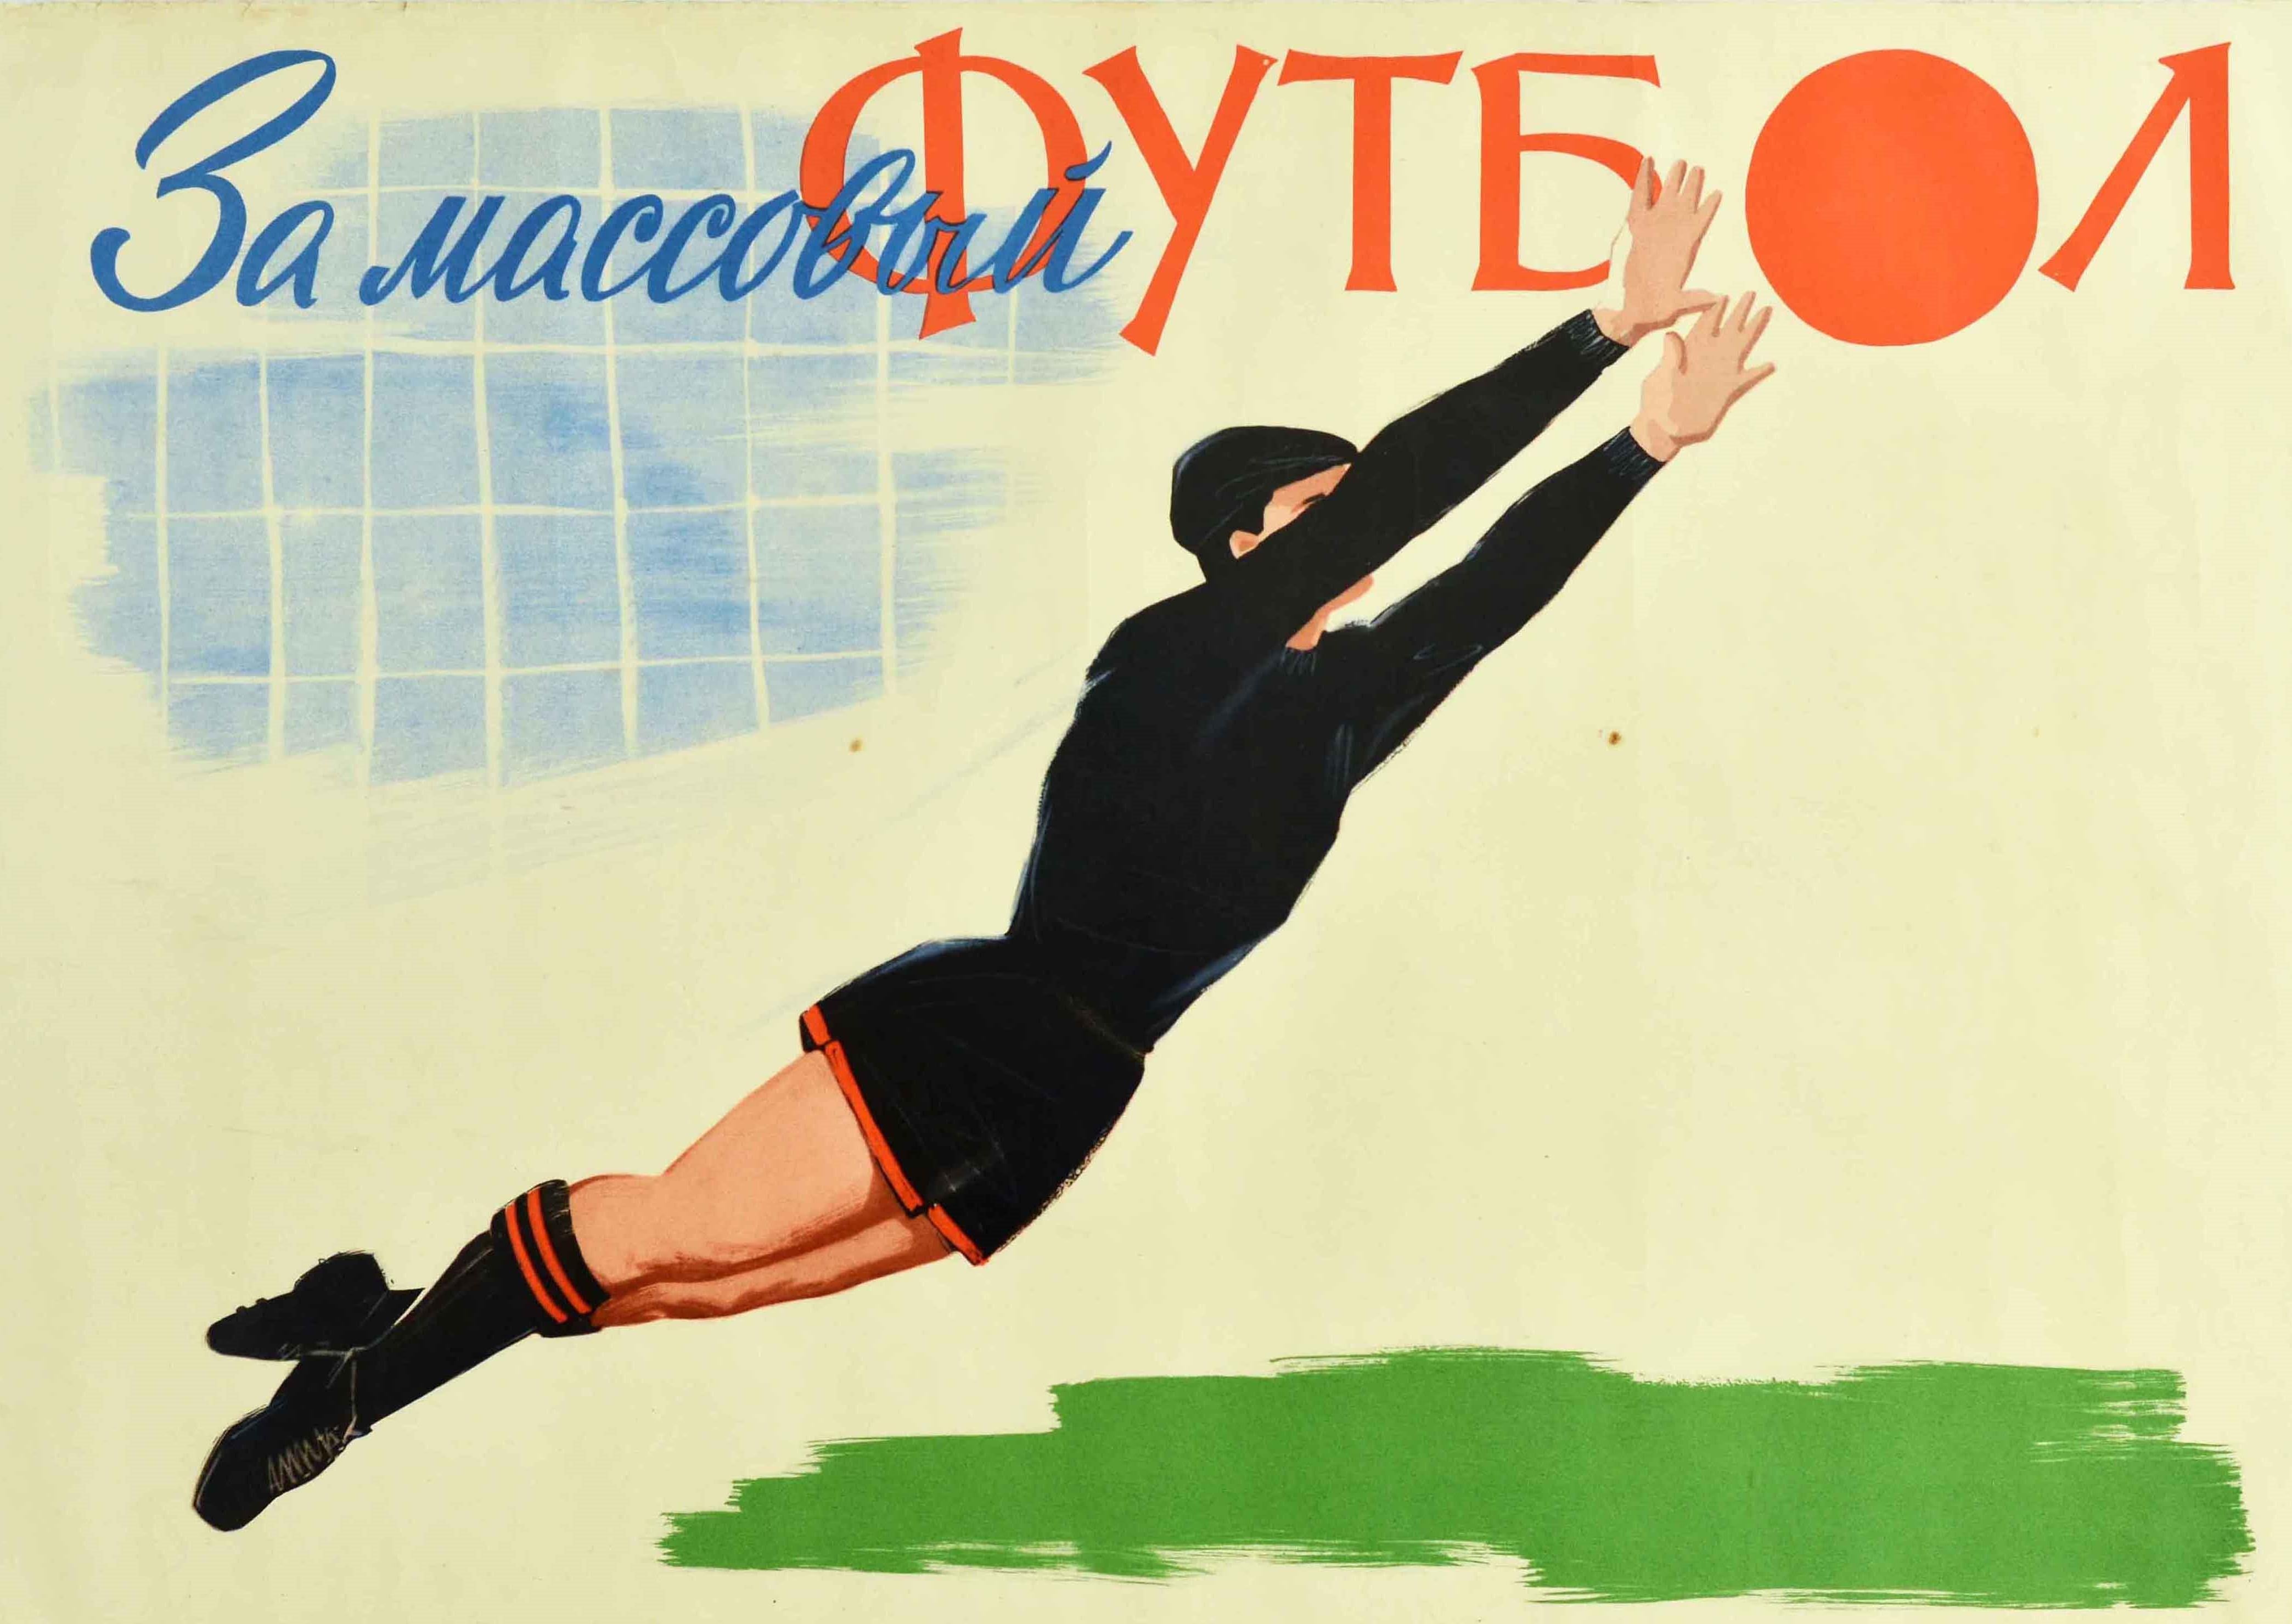 goalkeeper poster